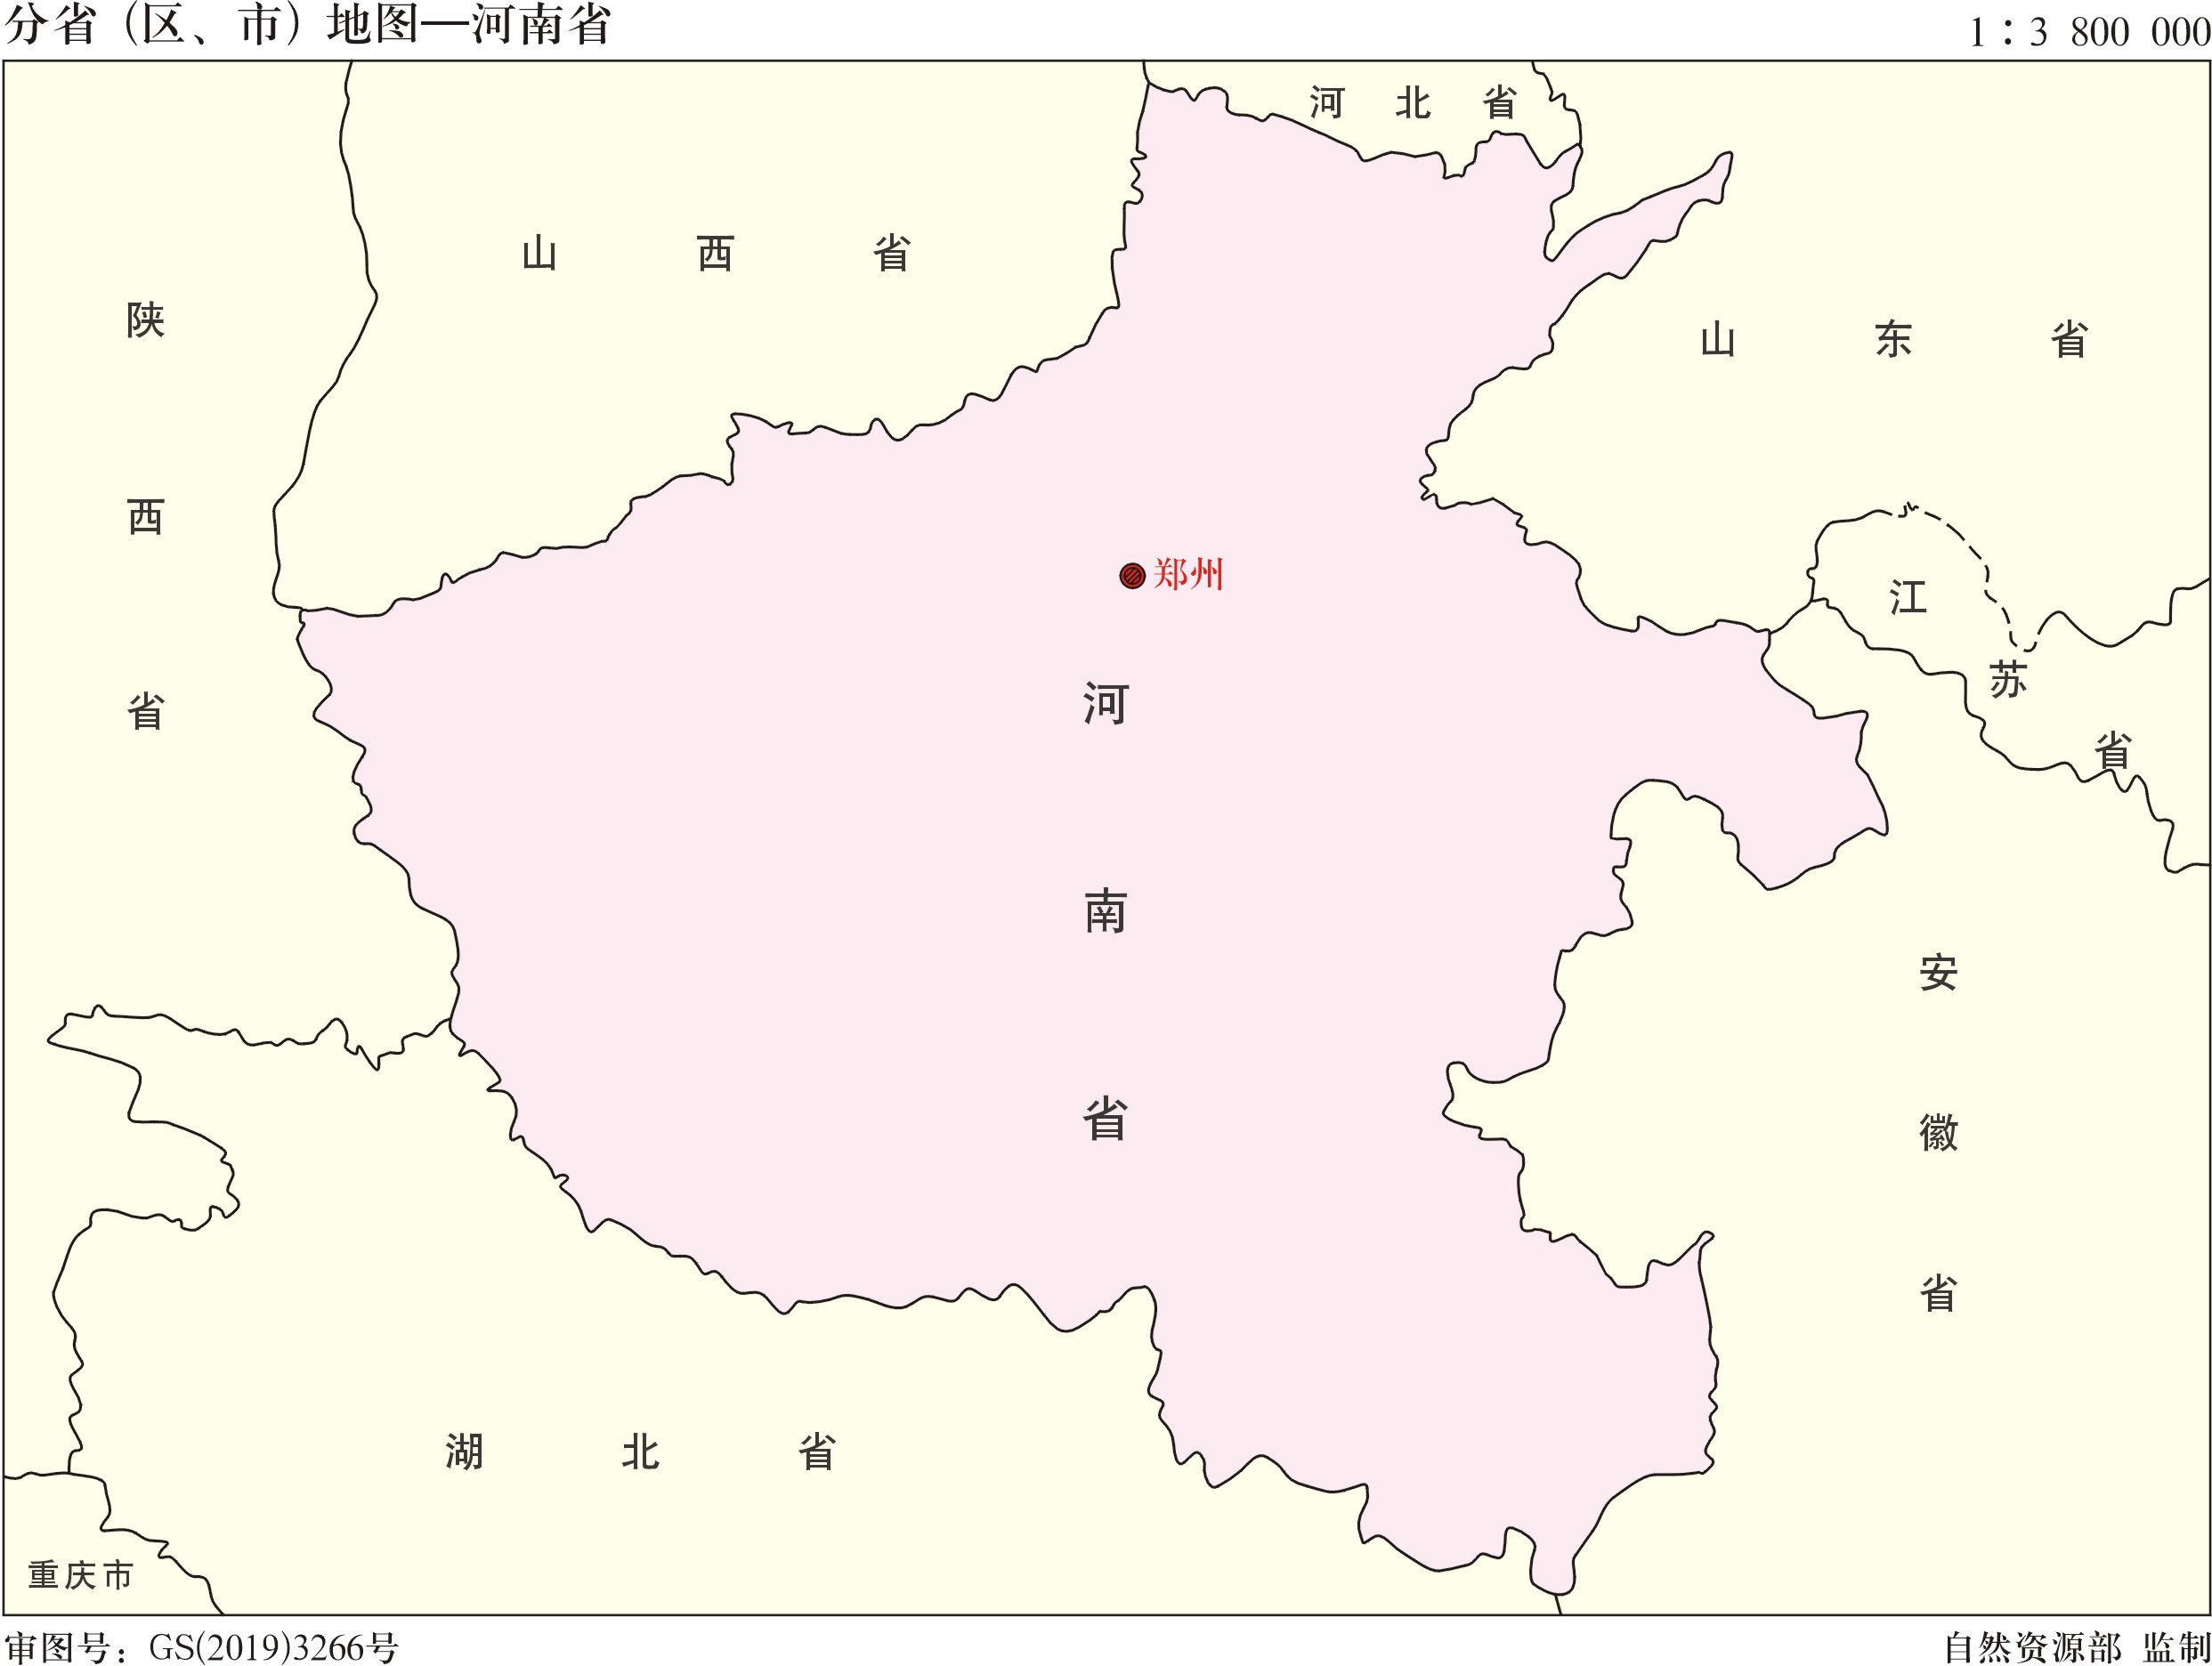 2022世界杯买球入口:河南省的汝州市4个地级市反复争夺为何划归了平顶山市